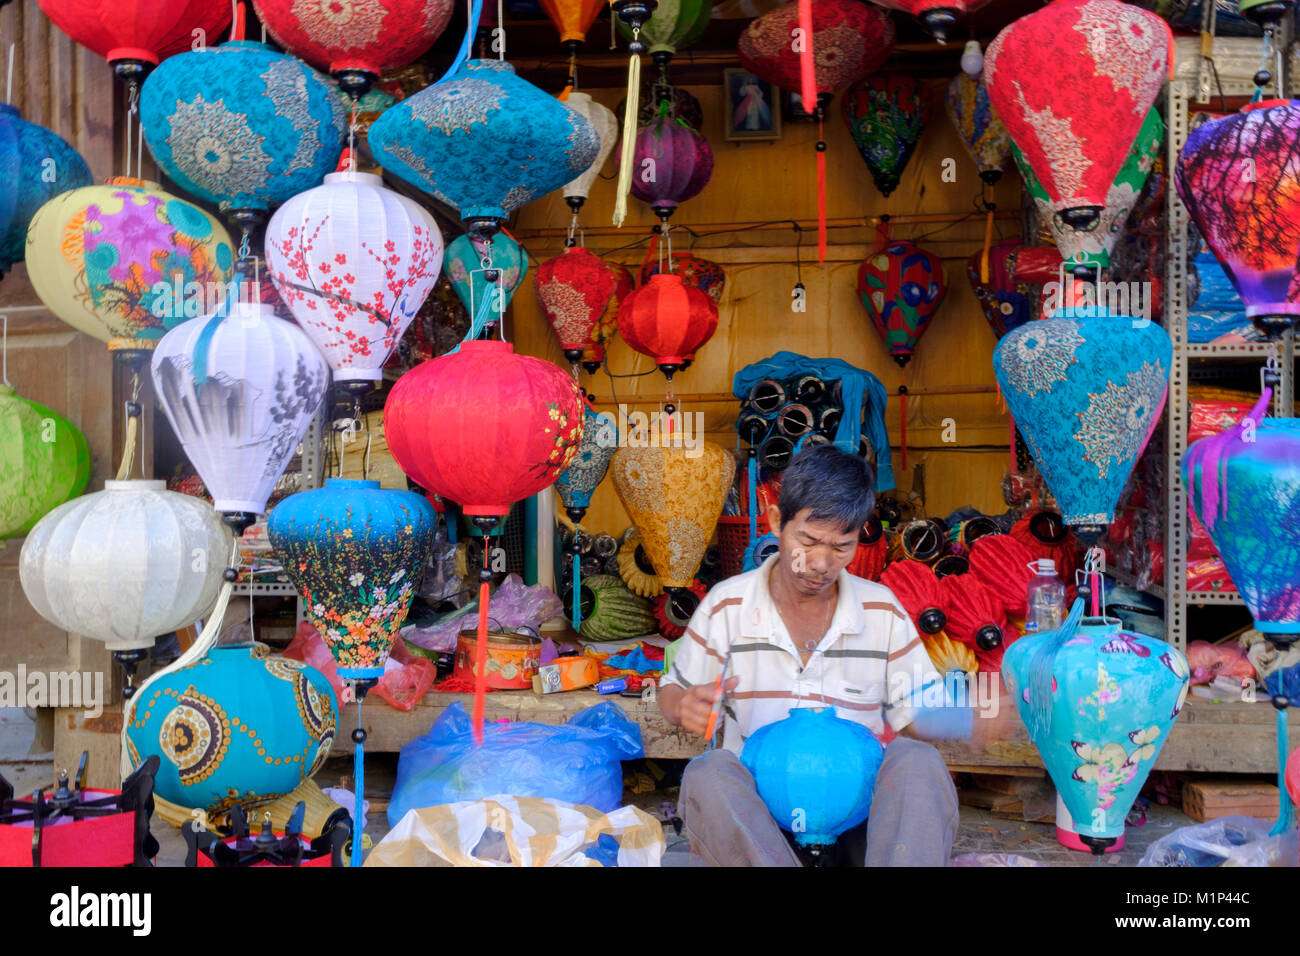 Un homme faisant des lanternes en papier dans un magasin à Hoi An, Vietnam, Indochine, Asie du Sud-Est, l'Asie Banque D'Images